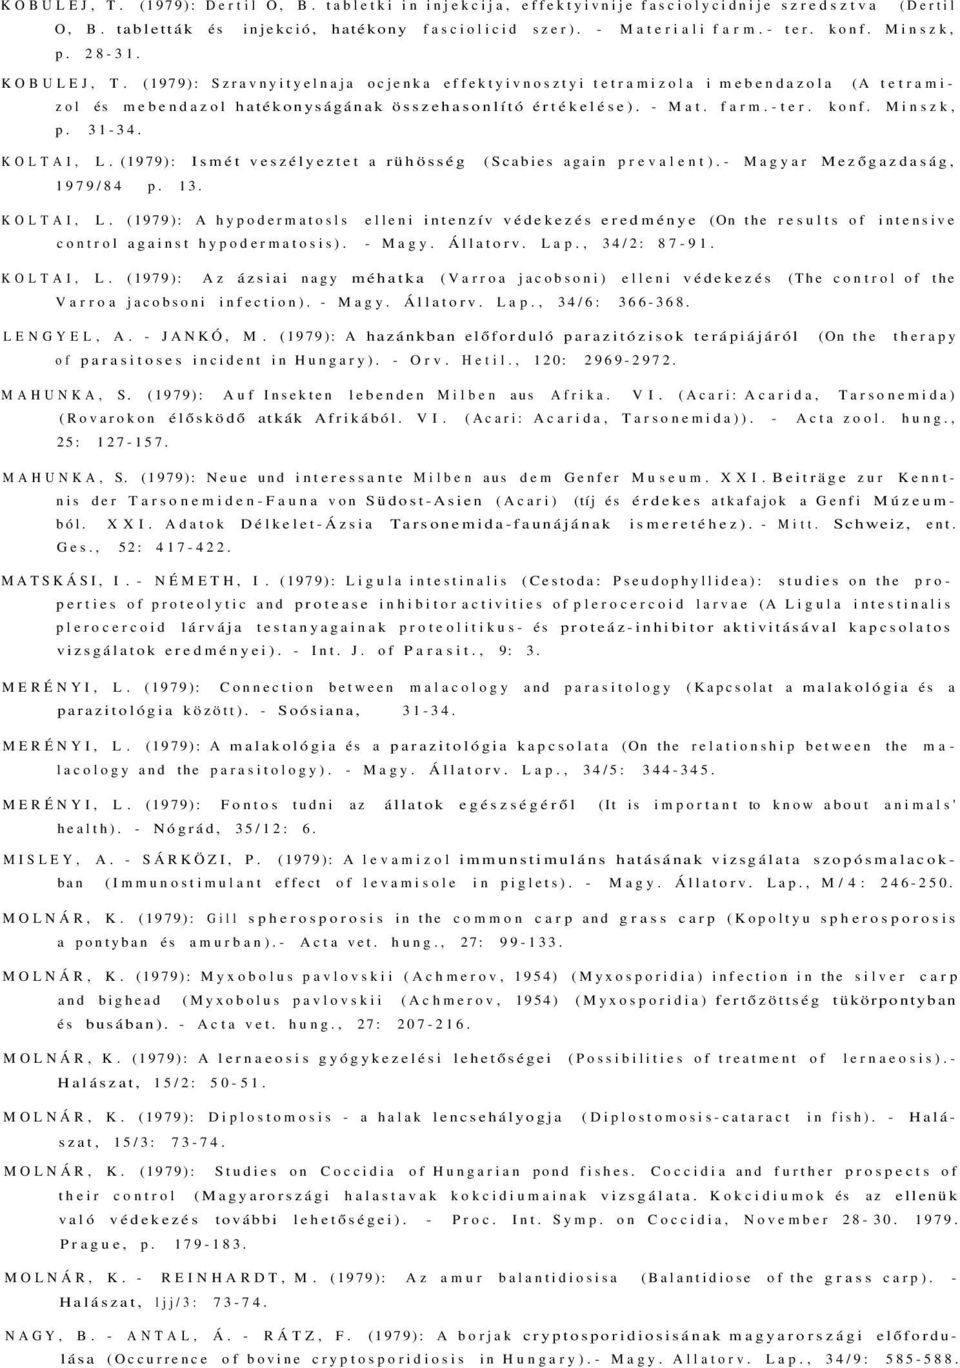 konf. Minszk, p. 31-34. KOLTAI, L. (1979): Ismét veszélyeztet a rühösség (Scabies again prevalent).- Magyar Mezőgazdaság, 1979/84 p. 13. KOLTAI, L. (1979): A hypodermatosls elleni intenzív védekezés eredménye (On the results of intensive control against hypodermatosis).